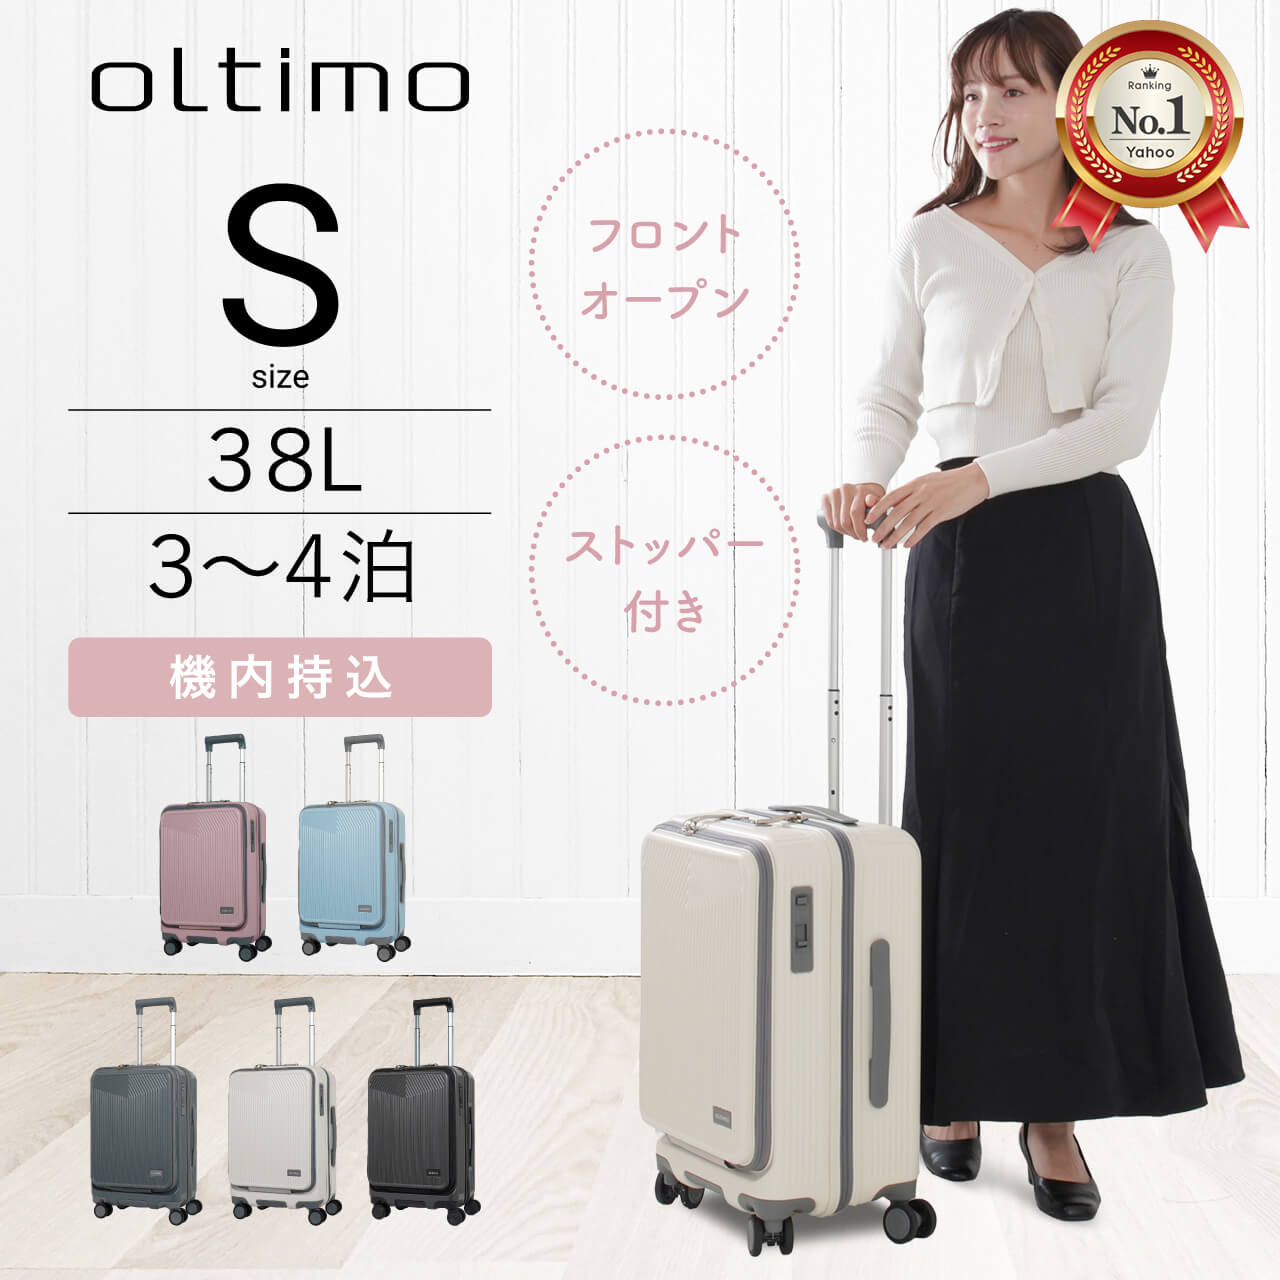 oltimo スーツケース 機内持ち込みサイズ オルティモ OT-0869-49